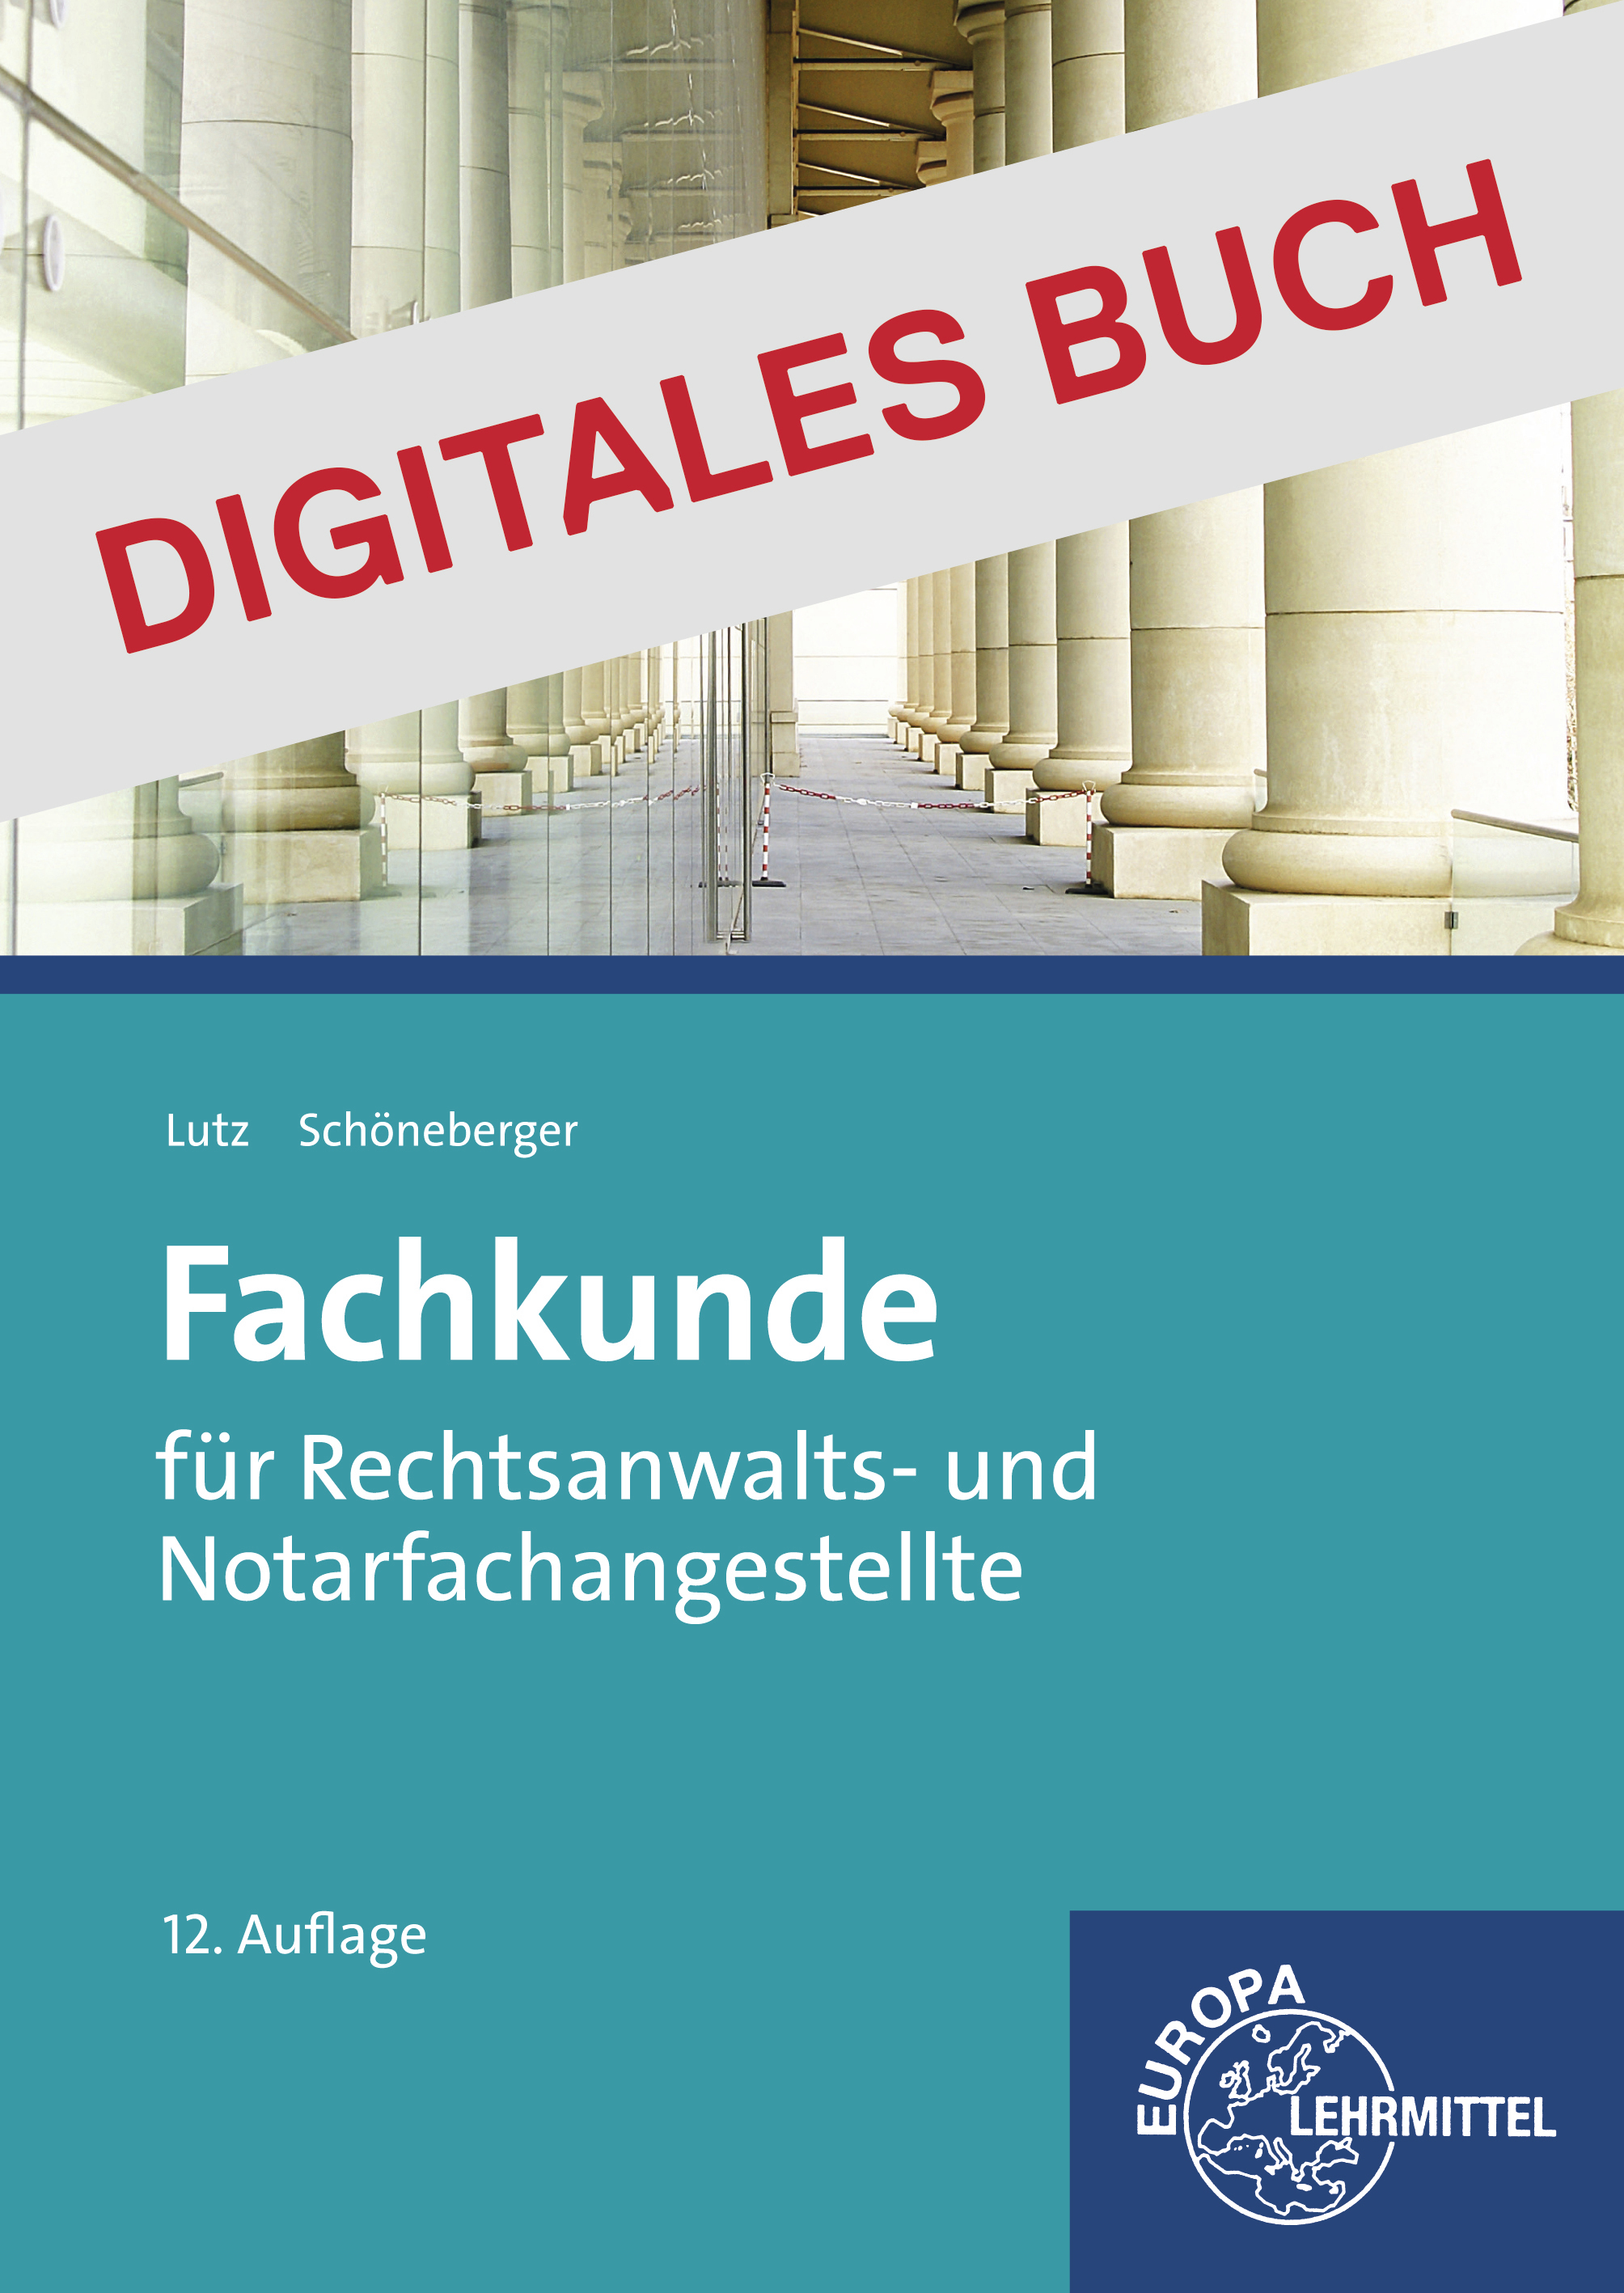 Fachkunde Rechtsanwalts- und Notarfachangestellte - Digitales Buch